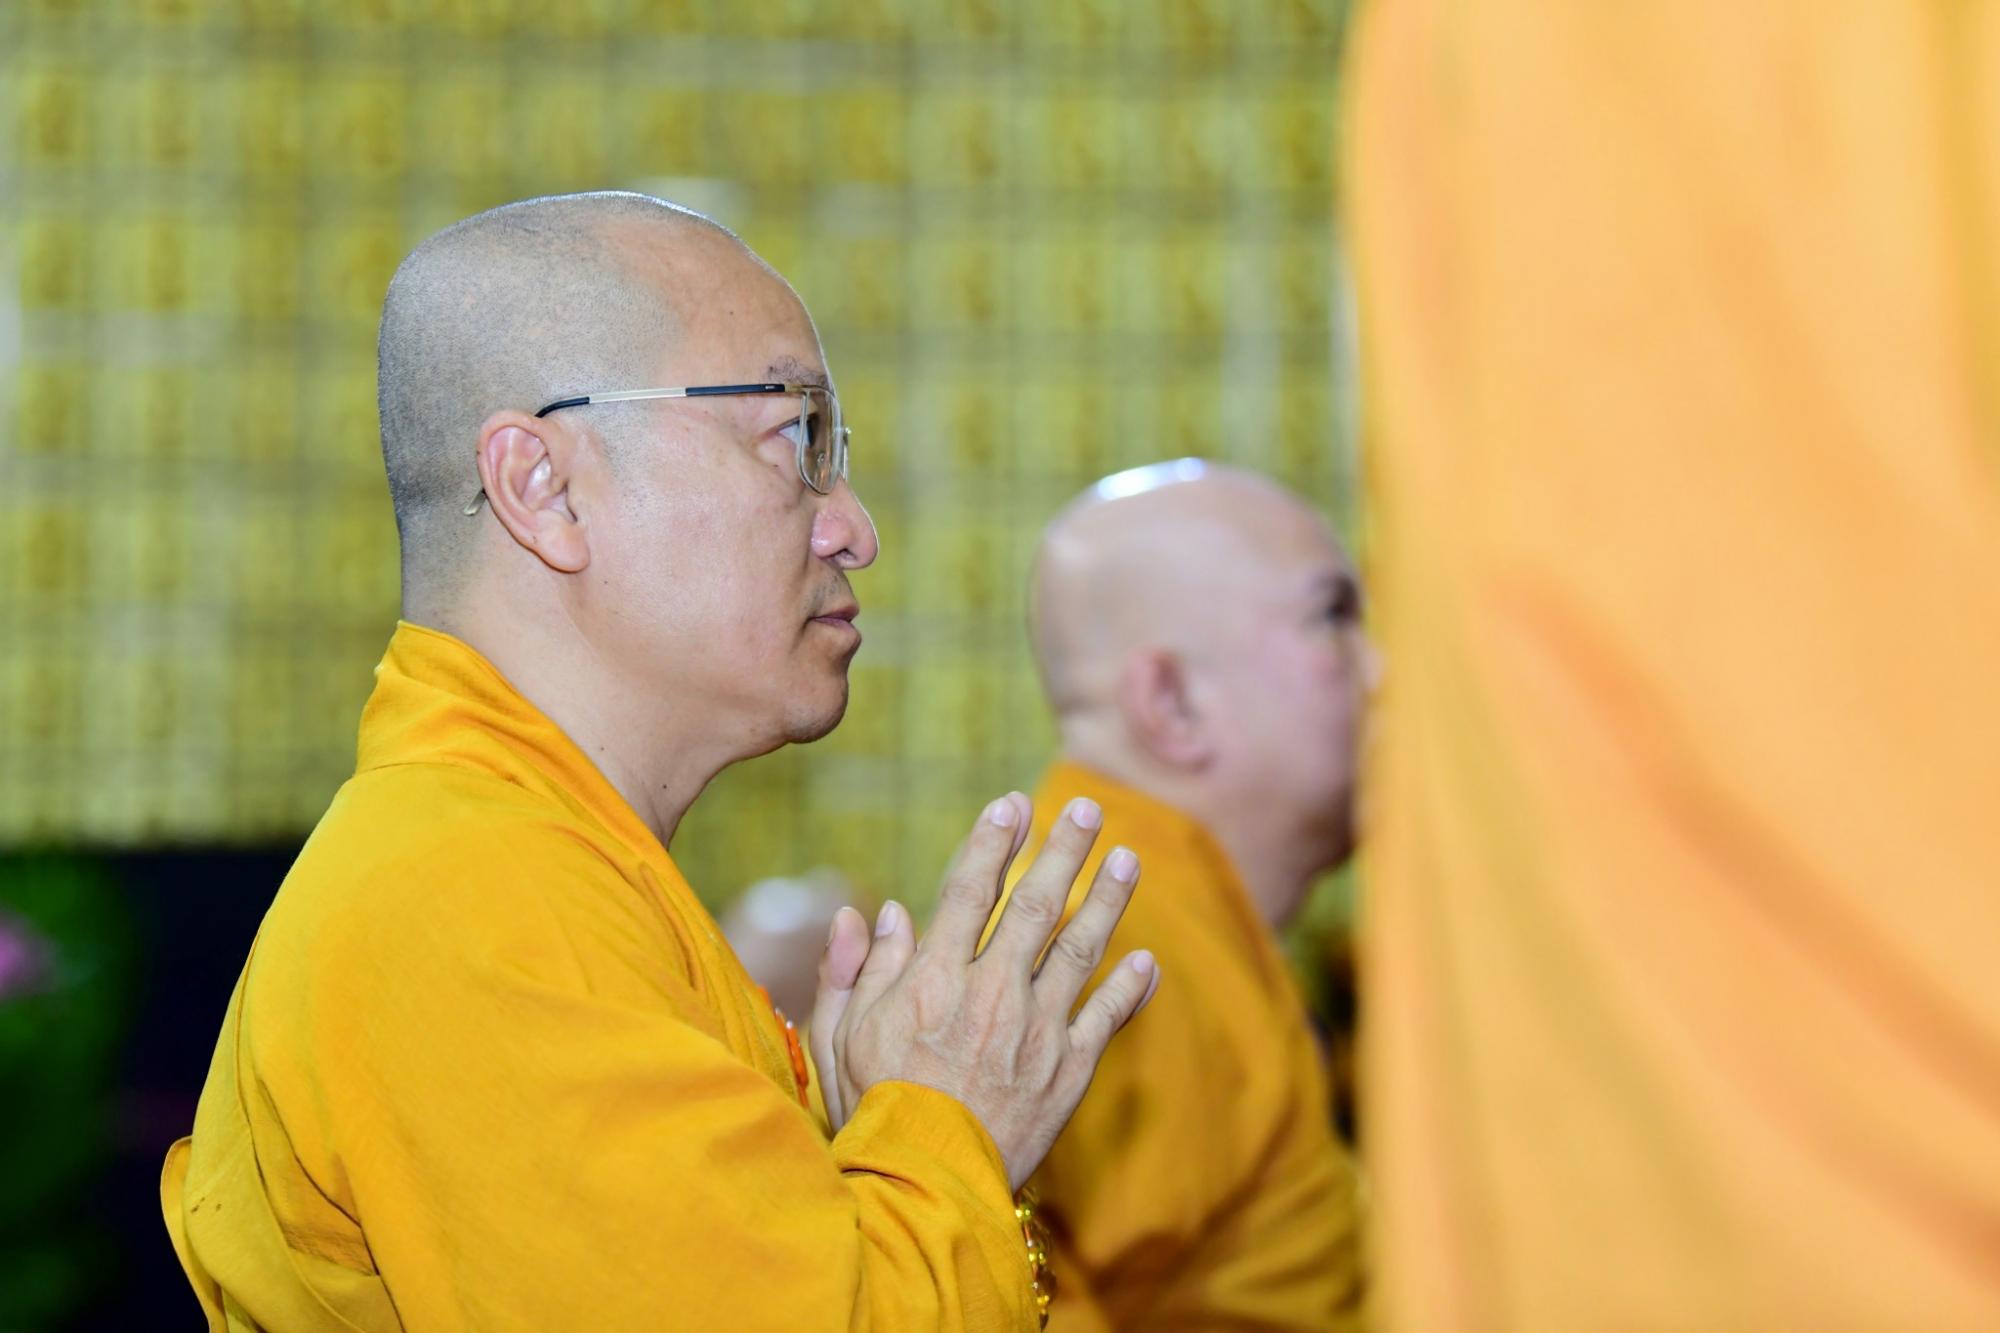 Phật giáo quận 10 tổ chức Lễ bố tát tụng giới tại chùa Giác Ngộ